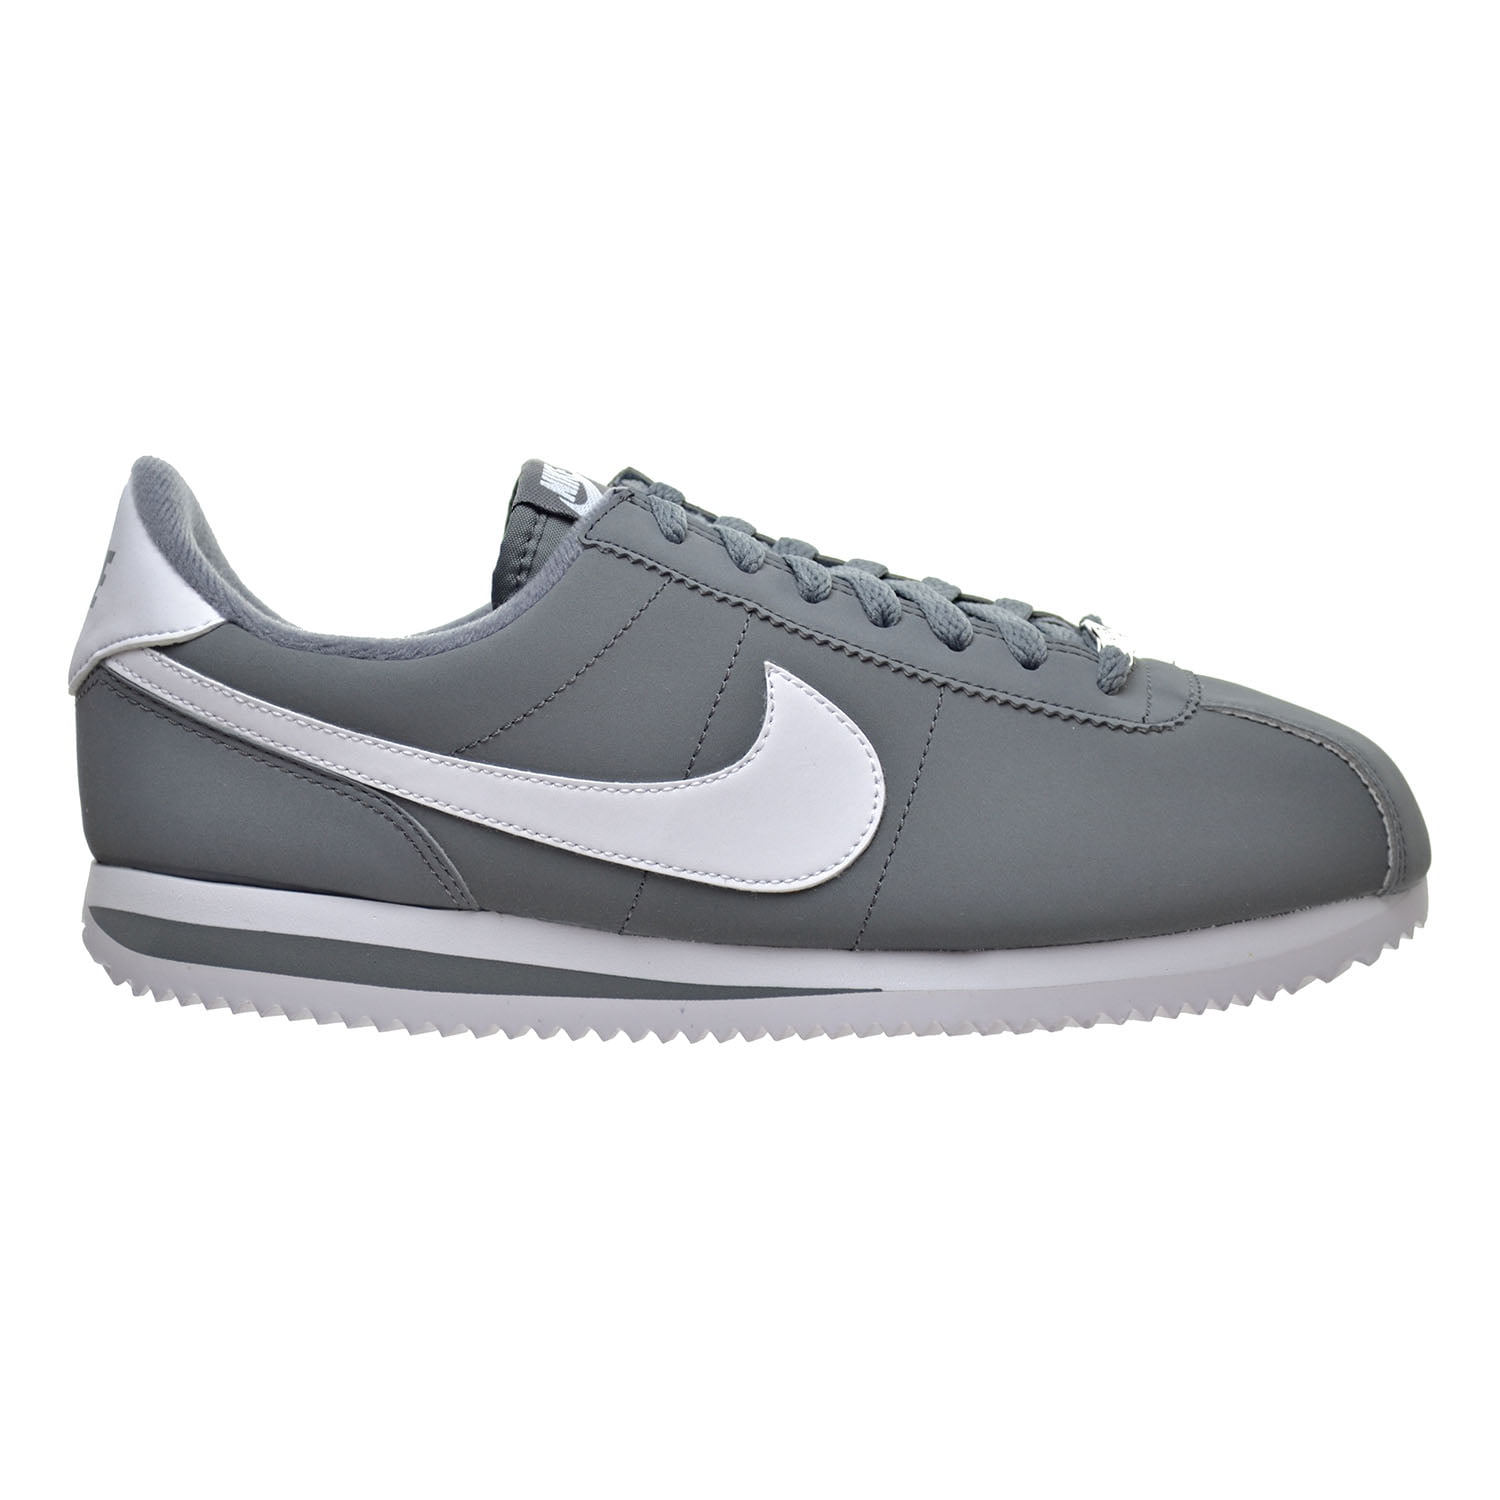 Nike Cortez Basic NBK Men's Shoes Grey/White/Metallic Silver 820644-011 ...